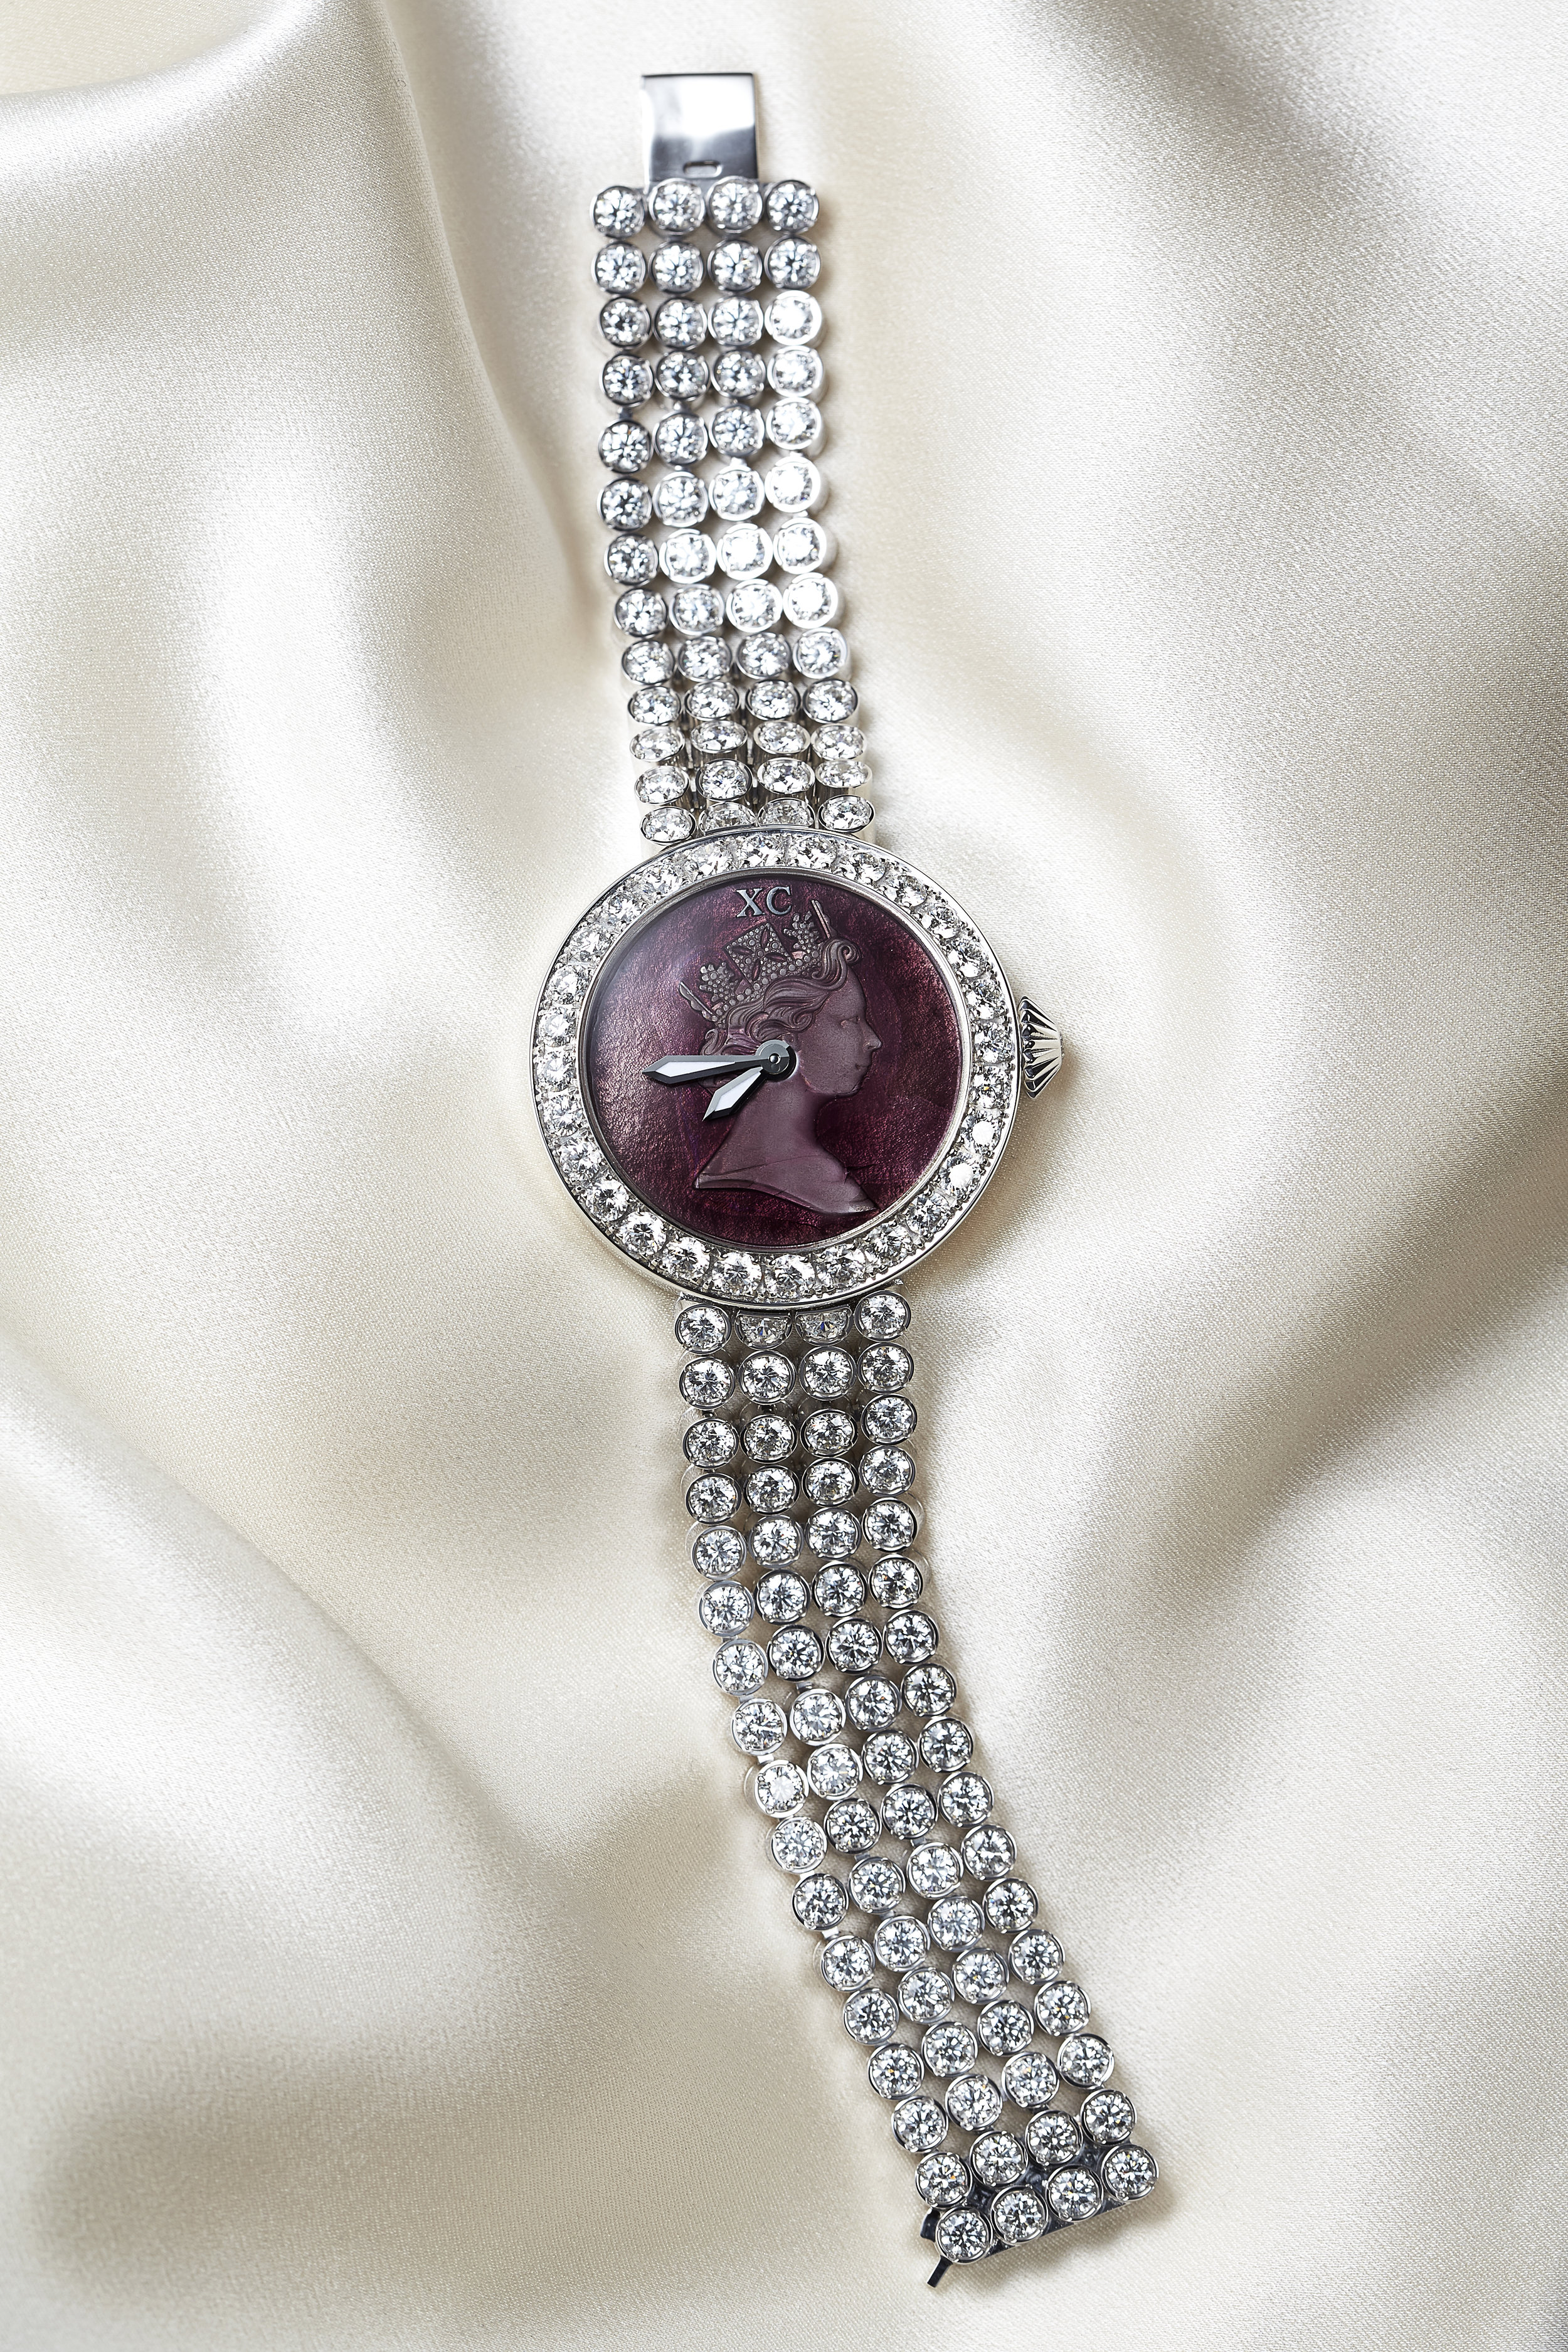 Princess Elizabeth limited edition watch 